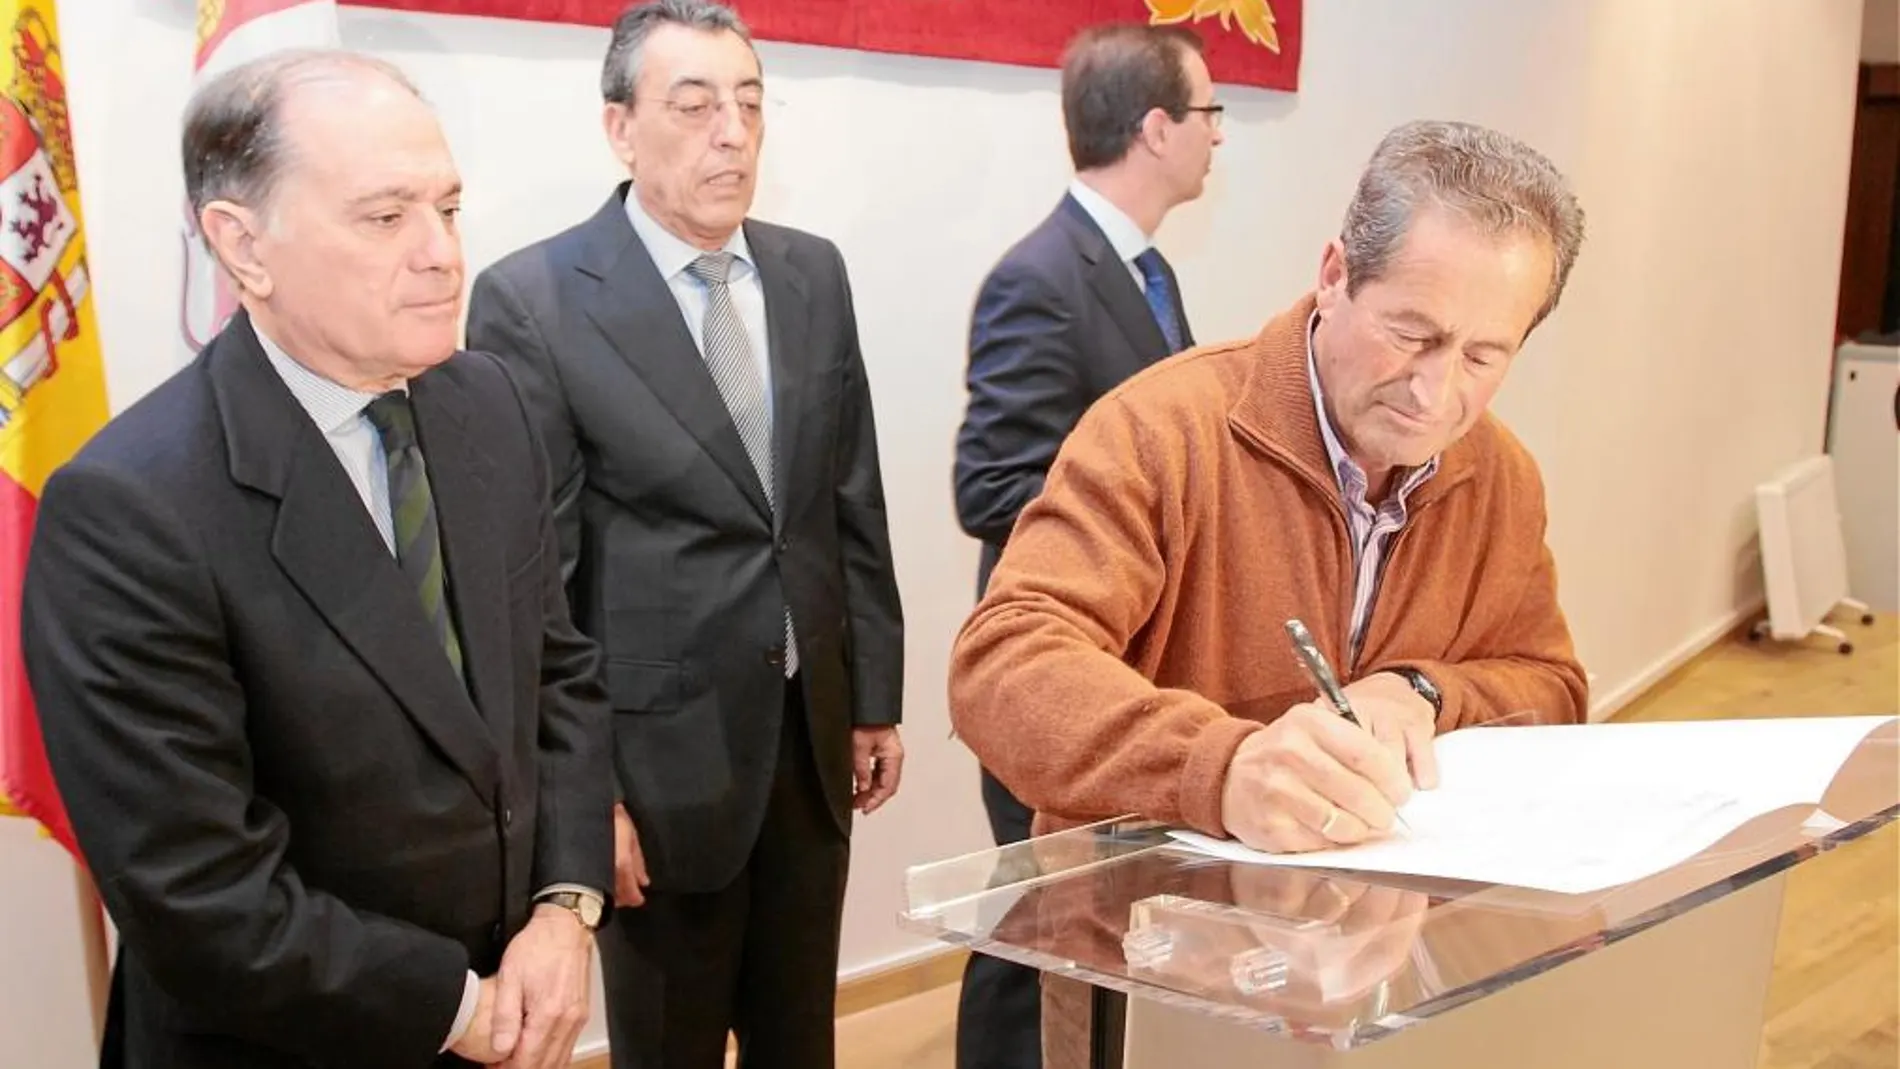 Tomás Villanueva observa como uno de los alcaldes firma, en presencia de Bienvenido Mena y Germán Barrios